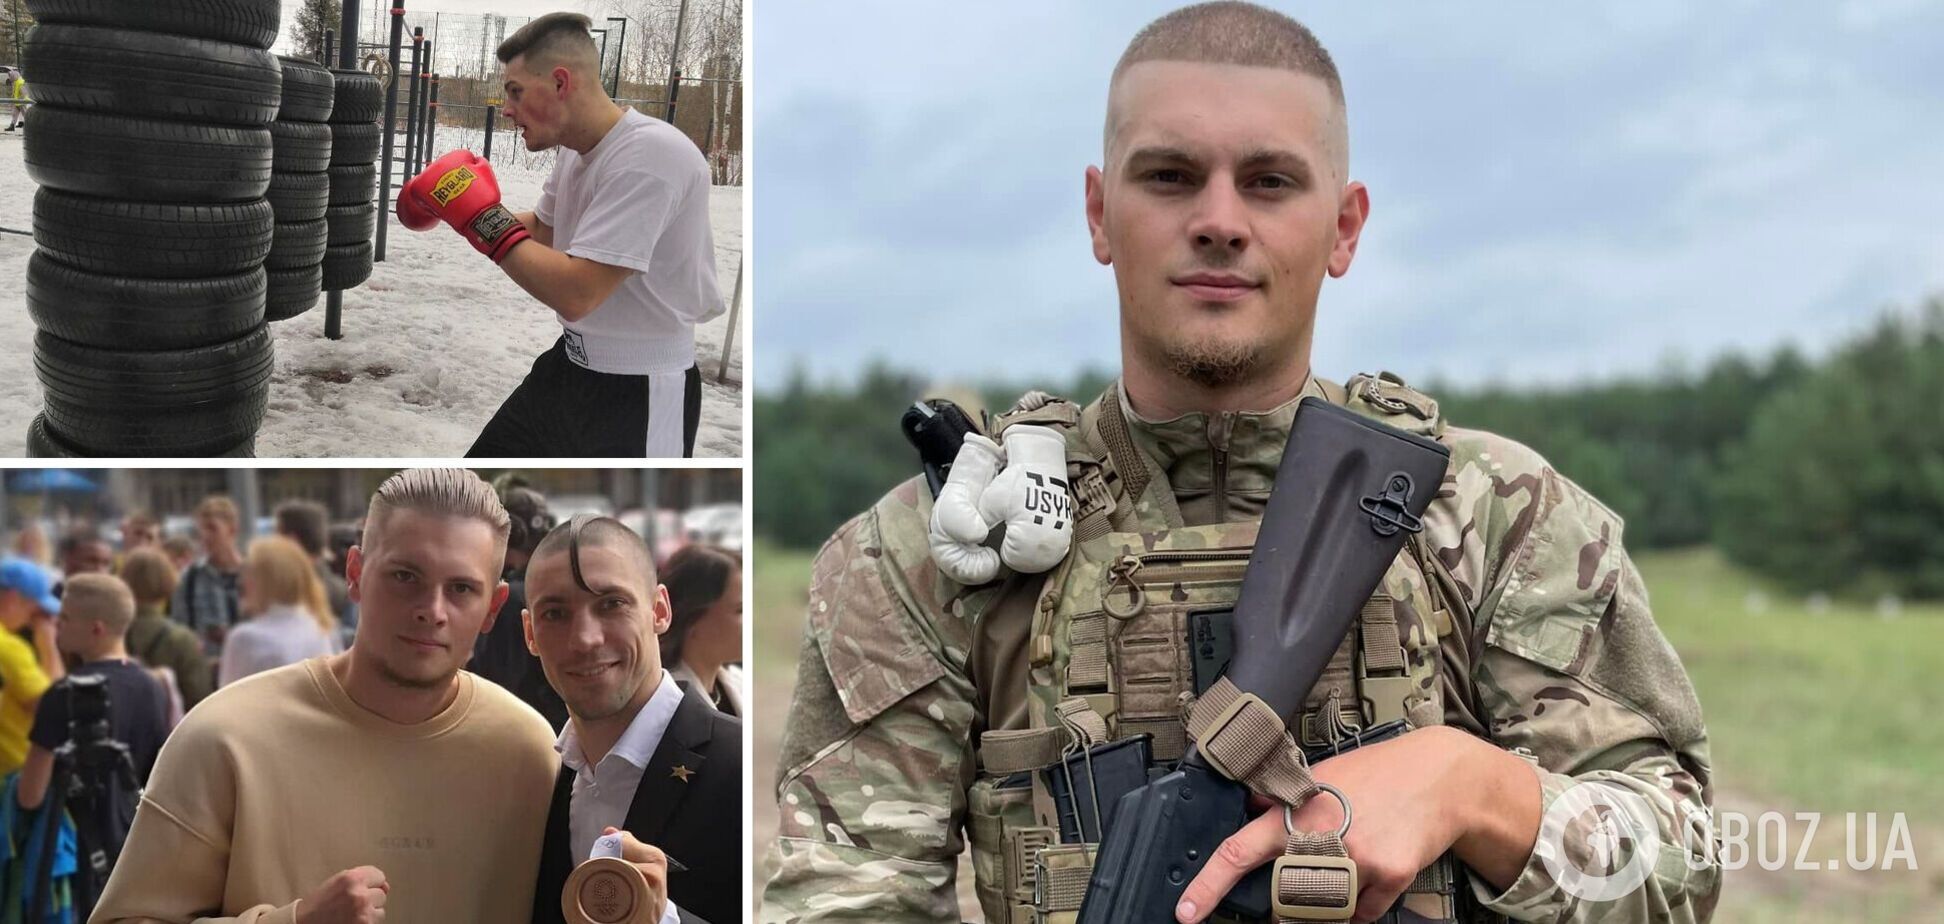 Закрив собою побратимів під час обстрілу з 'Градів': боксер, який воював у 'Азові', героїчно загинув у Луганській області